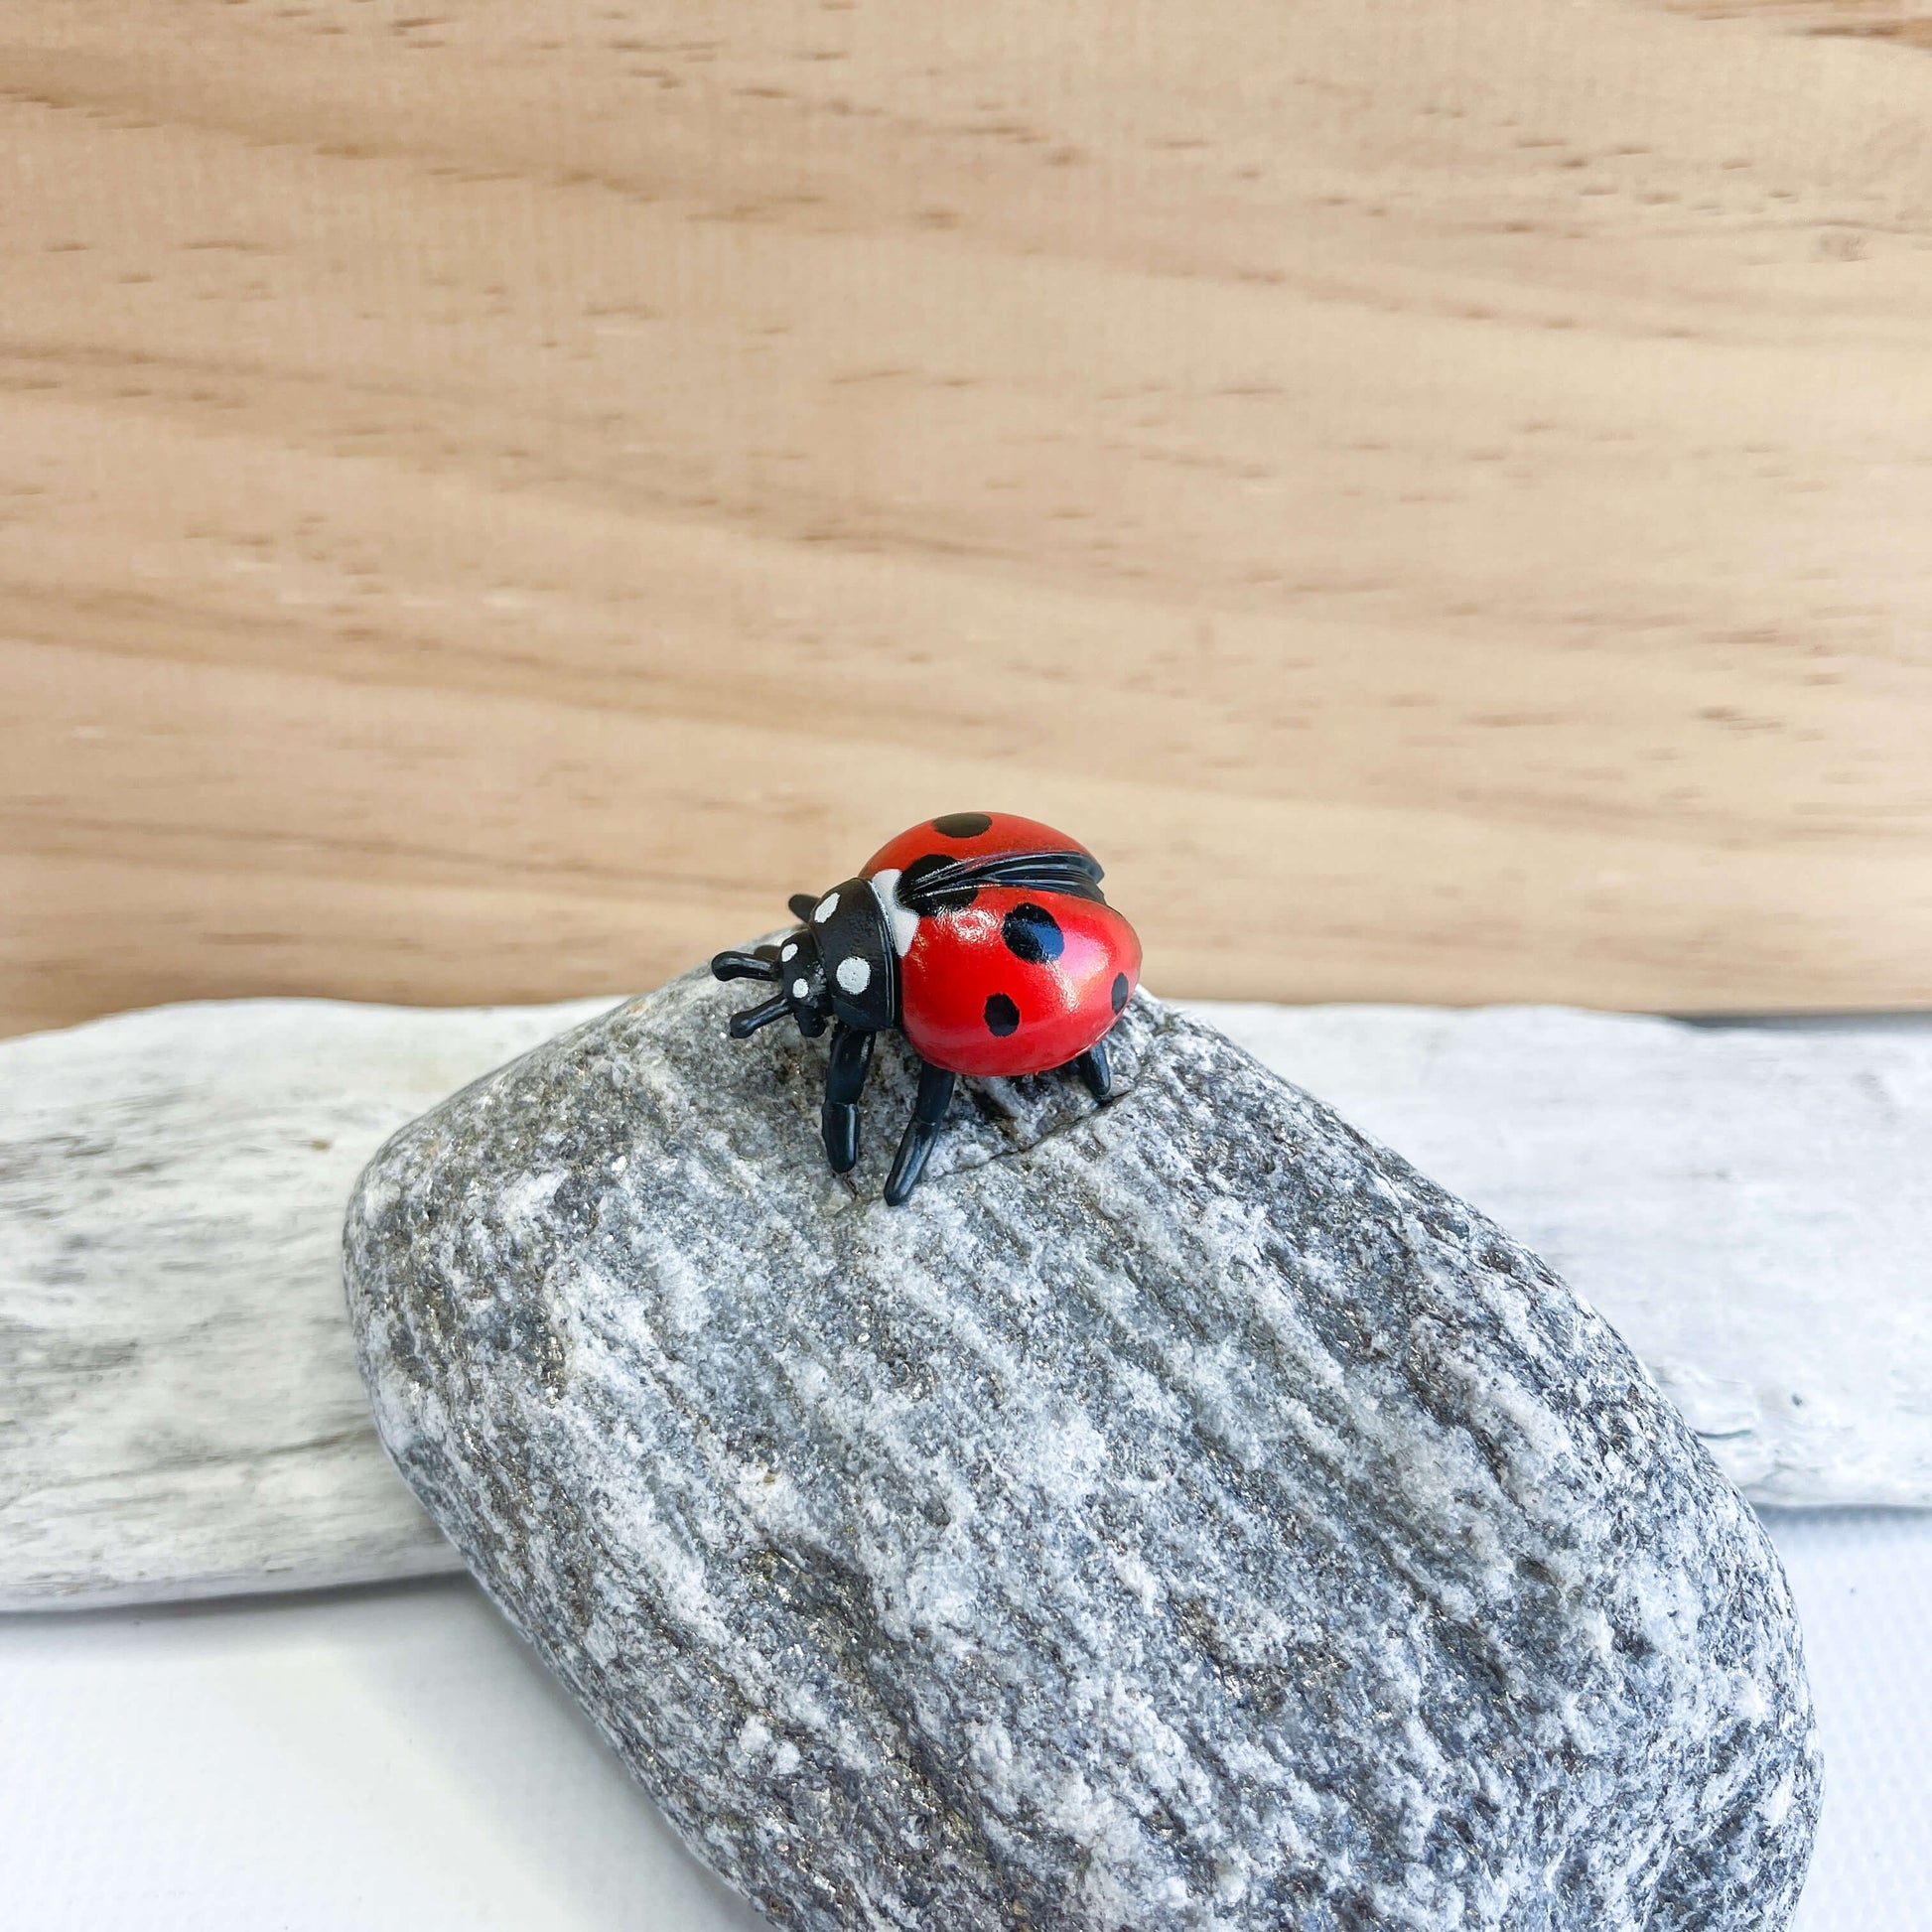 Mini ladybug figurine.